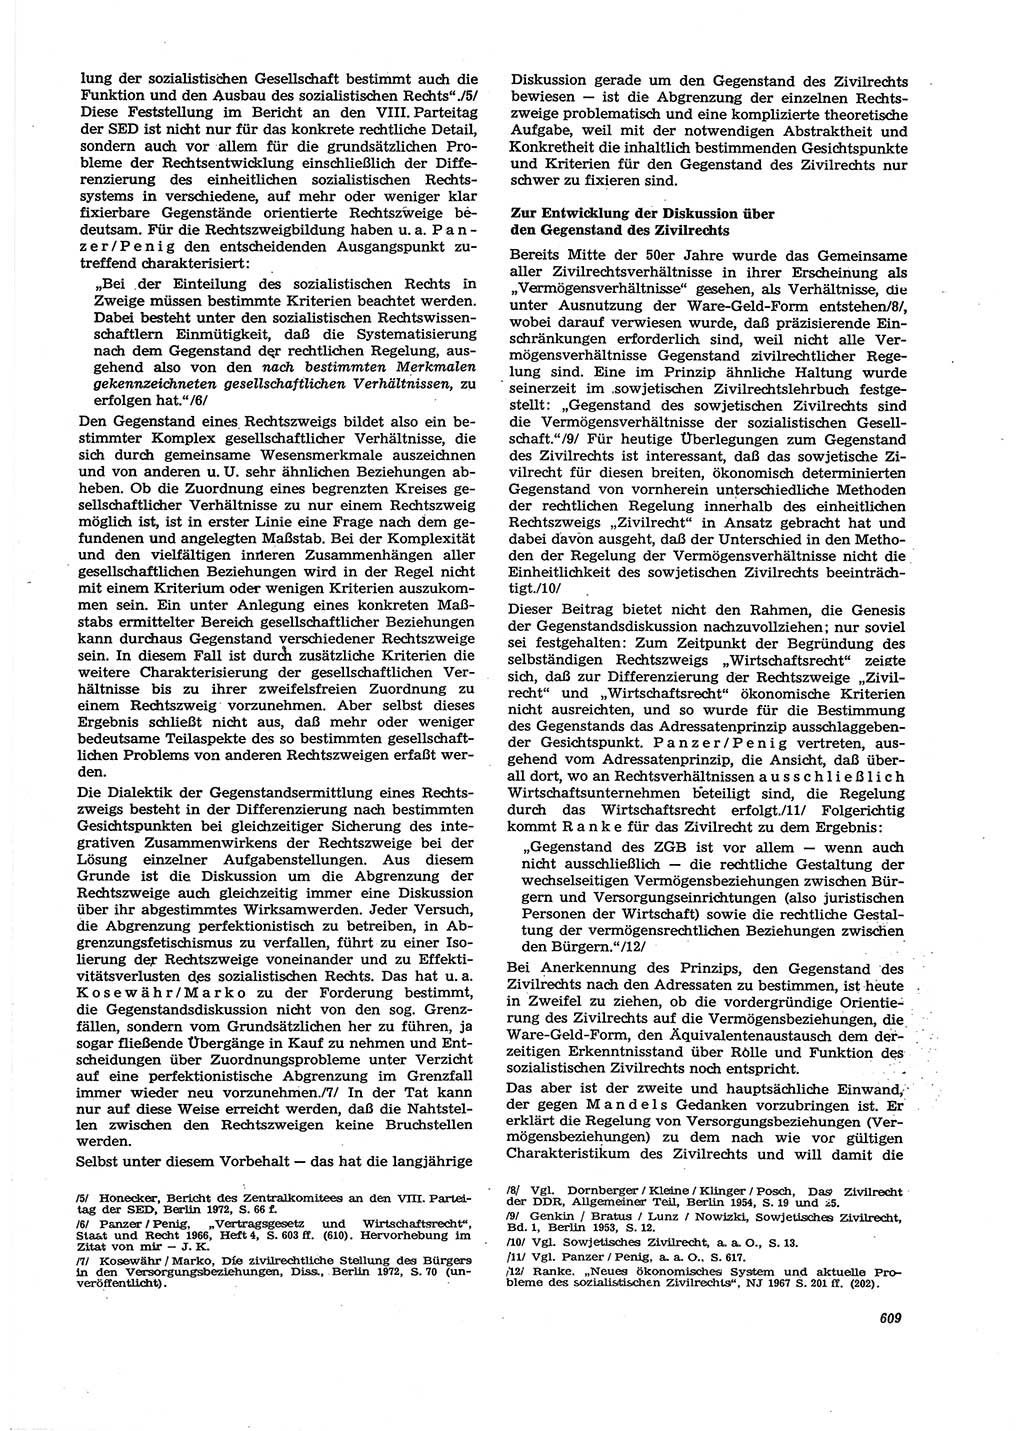 Neue Justiz (NJ), Zeitschrift für Recht und Rechtswissenschaft [Deutsche Demokratische Republik (DDR)], 27. Jahrgang 1973, Seite 609 (NJ DDR 1973, S. 609)